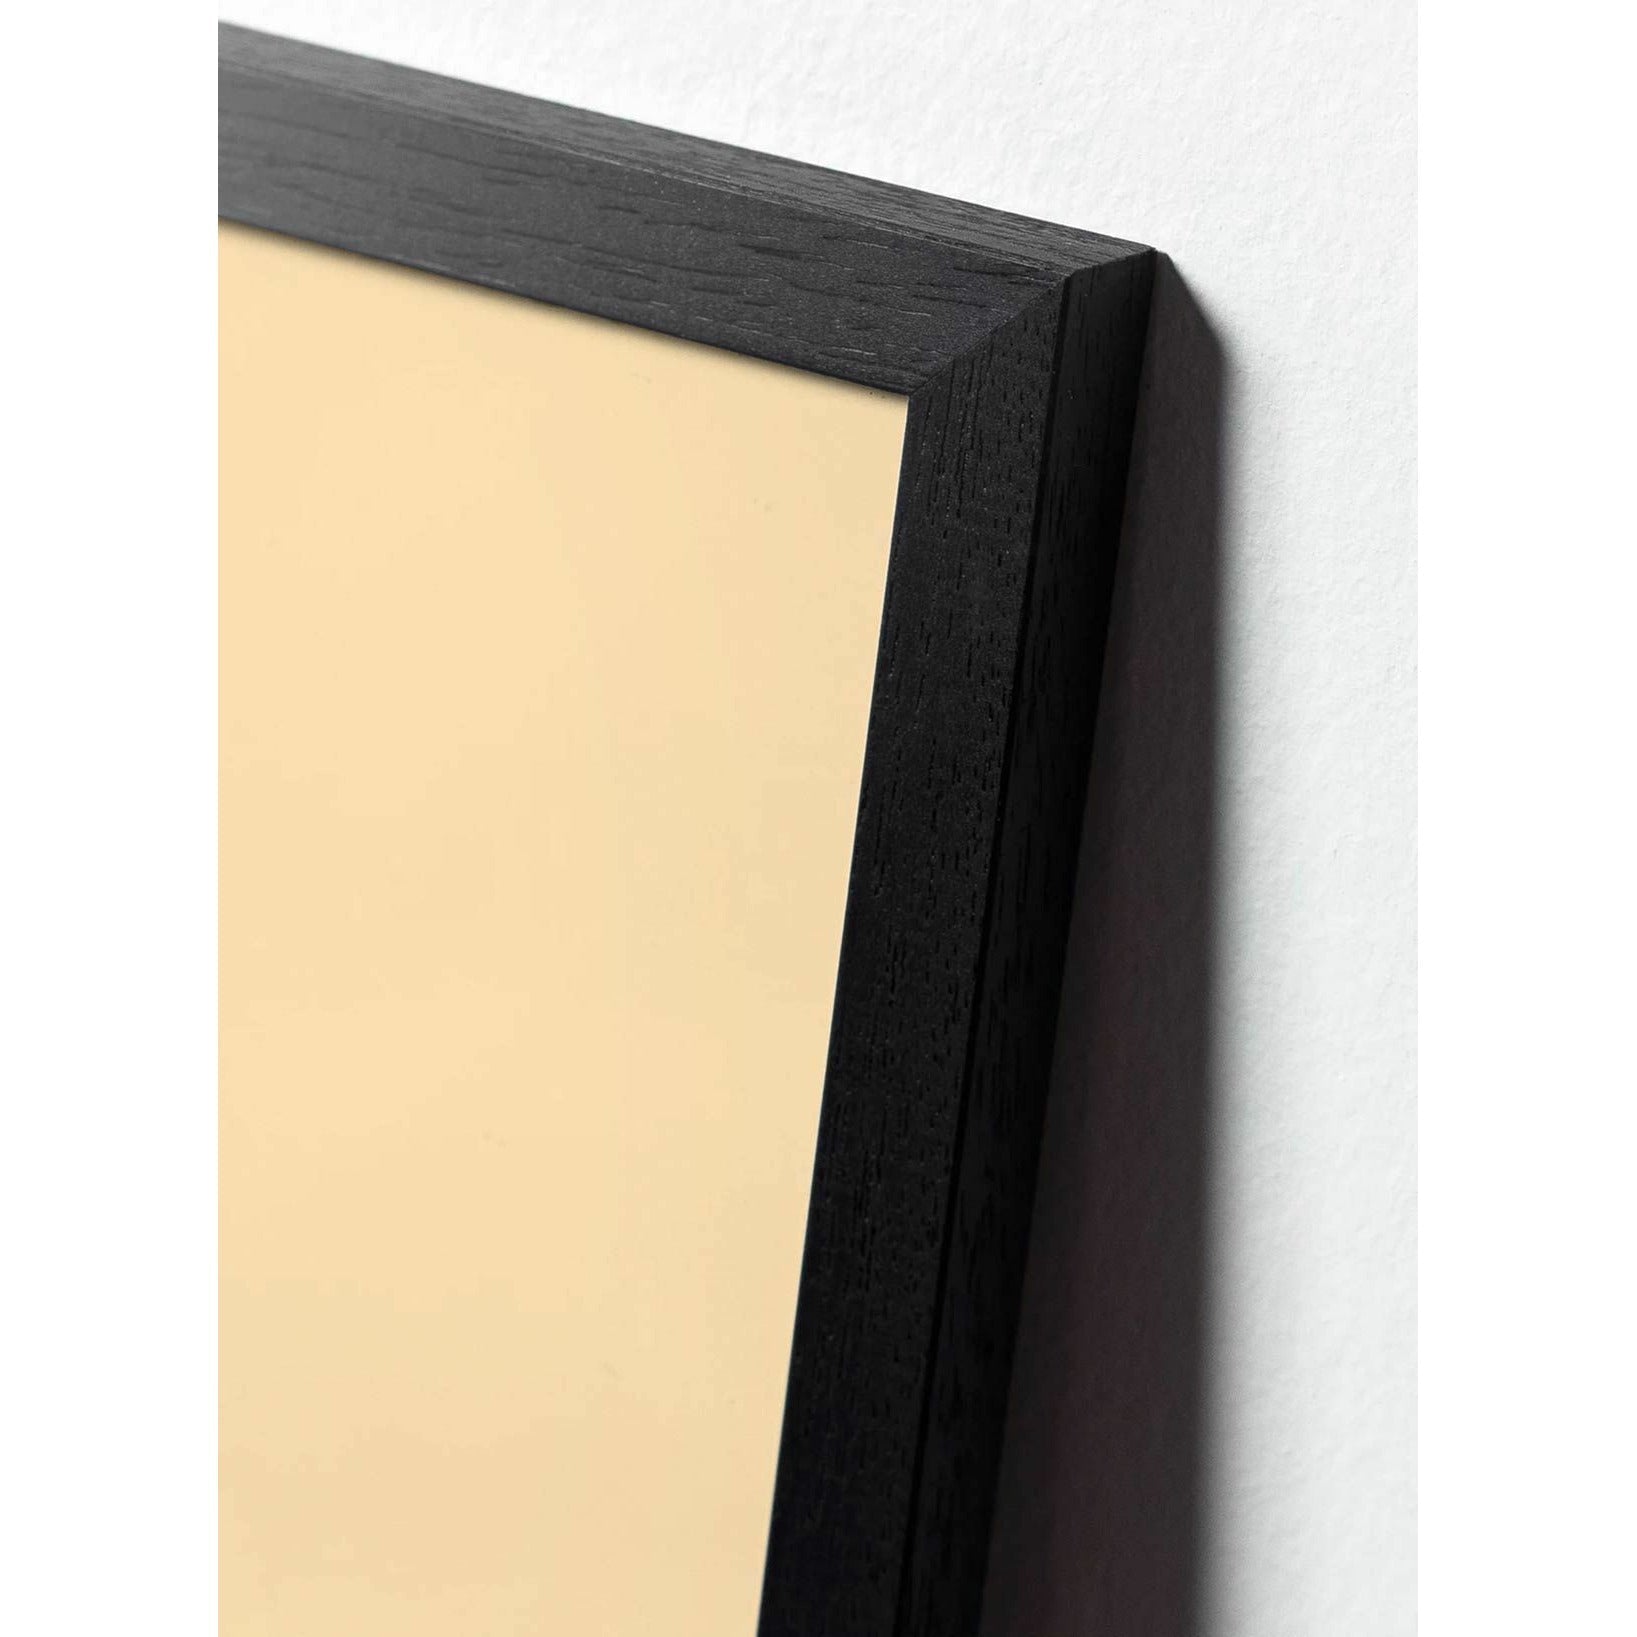 Klasický plakát mozkového kužele, rám vyrobený z černého lakovaného dřeva 30x40 cm, pískově barevné pozadí